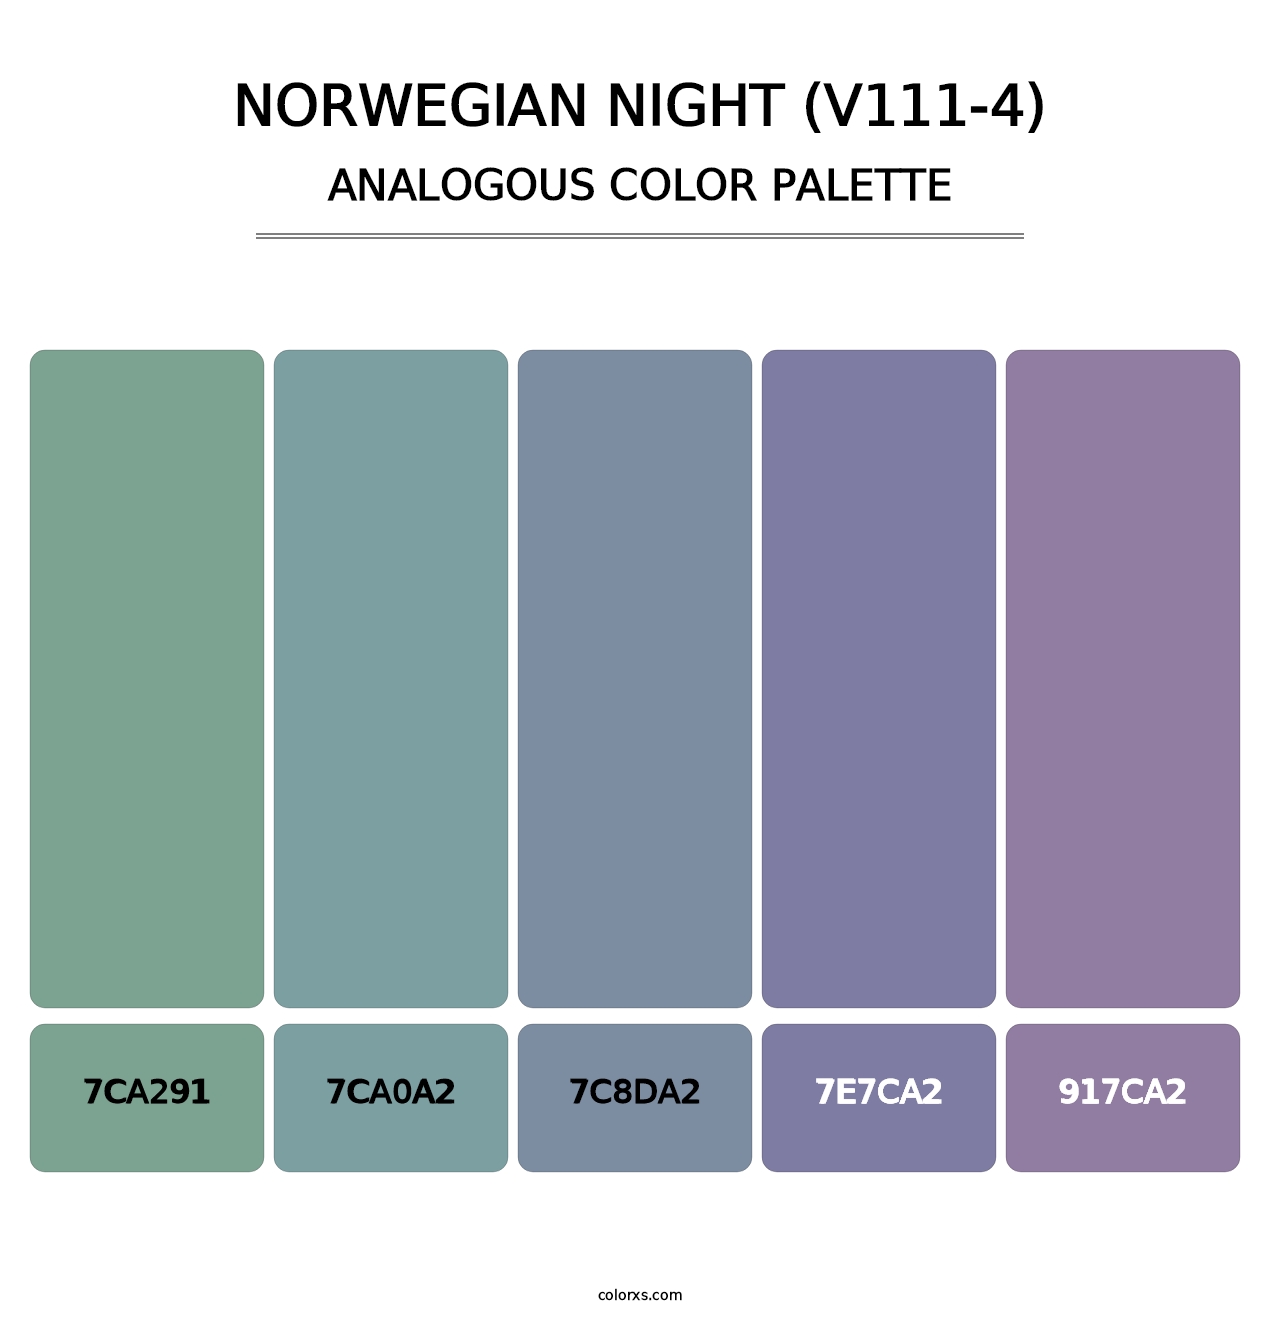 Norwegian Night (V111-4) - Analogous Color Palette